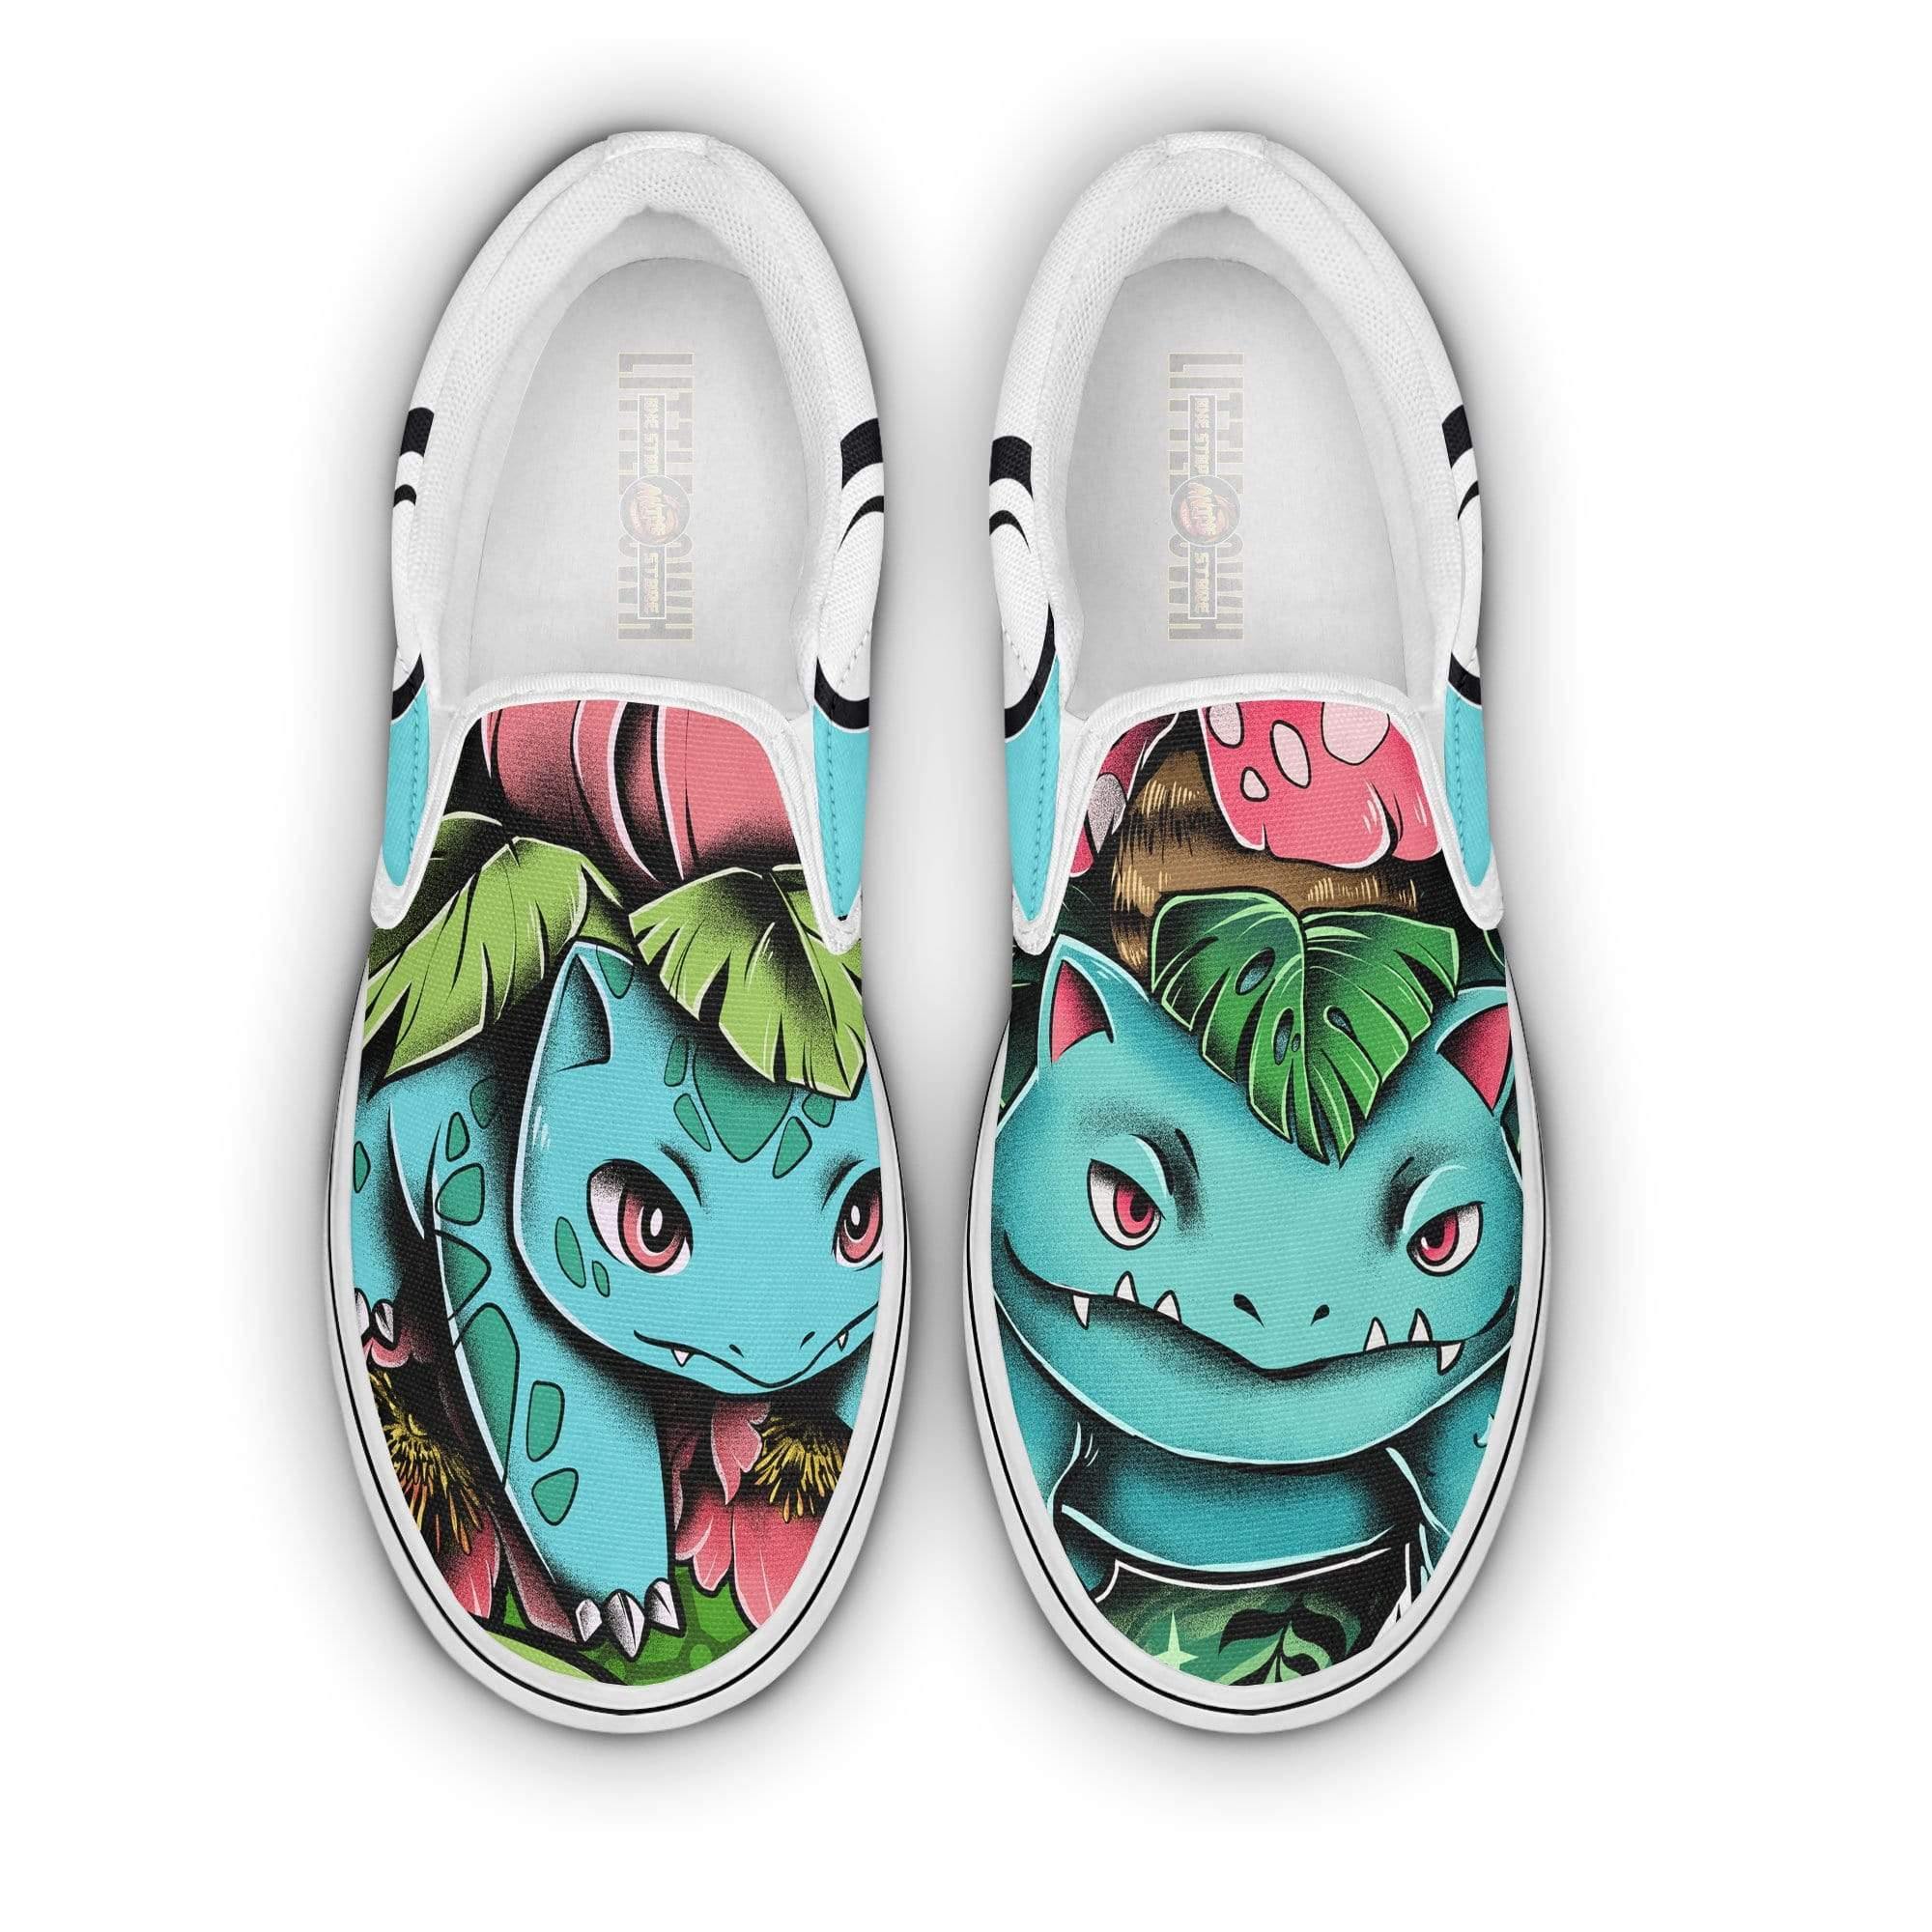 Bulbasaur Custom Pokemon Shoes Slip On Anime Flat Sneakers